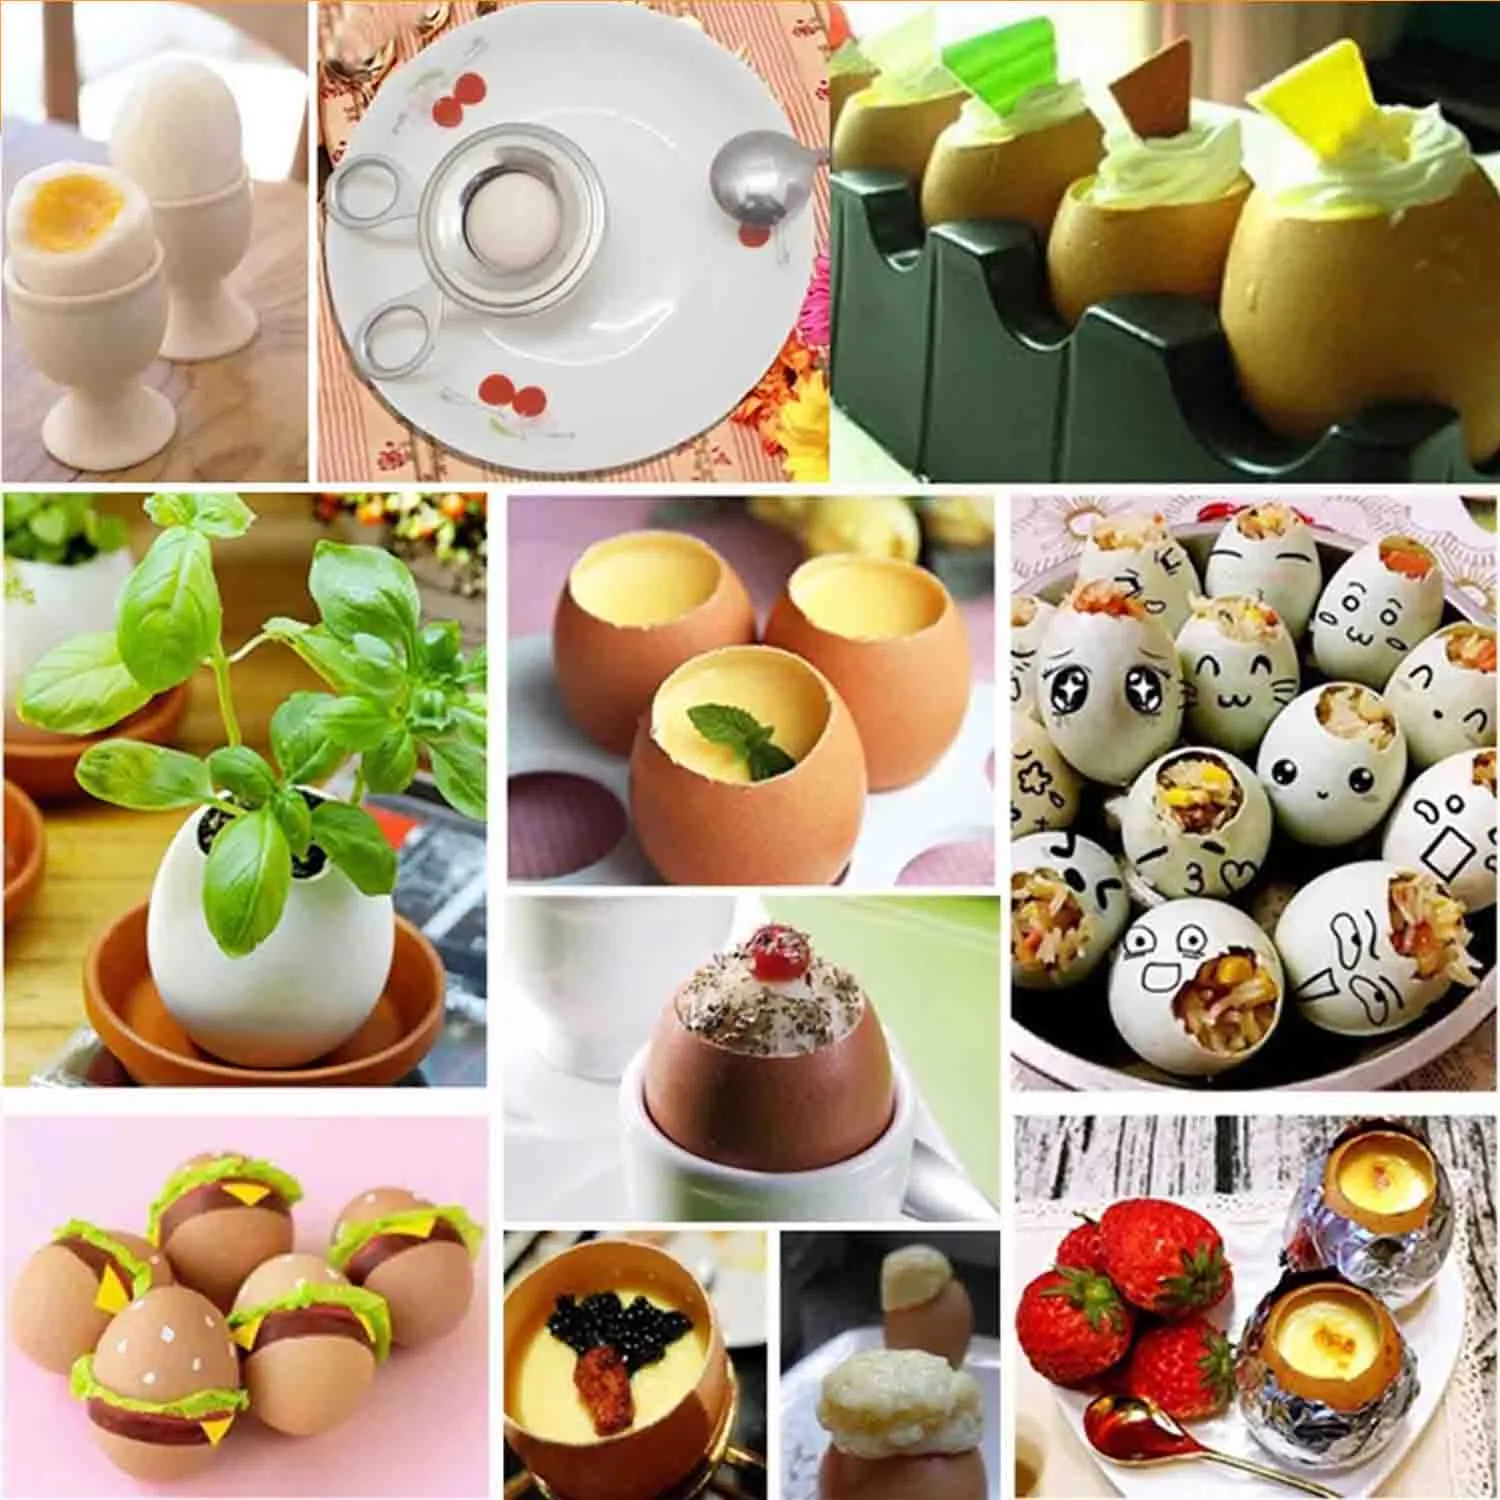 Herramienta multifuncional para batir huevos, utensilio para abrir huevos, tijeras, rebanada de acero inoxidable, separador de huevos, accesorios de cocina